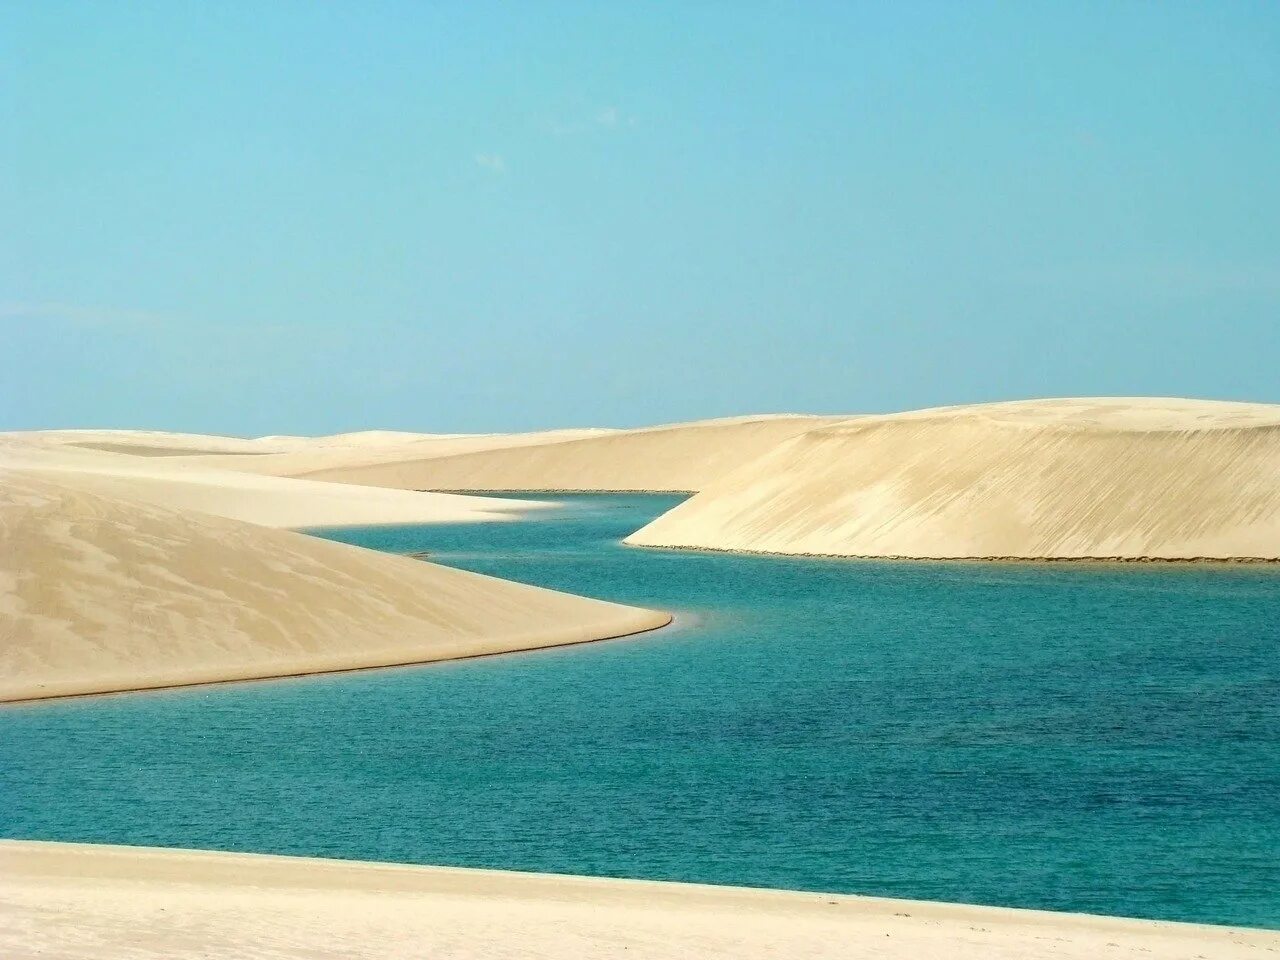 Озеро Ленсойс Мараньенсес. Парк Ленсойc-Мараньенсес, Бразилия. Оазисы Саудовской Аравии. Оазис Аравийской пустыни. Саудовская аравия песок